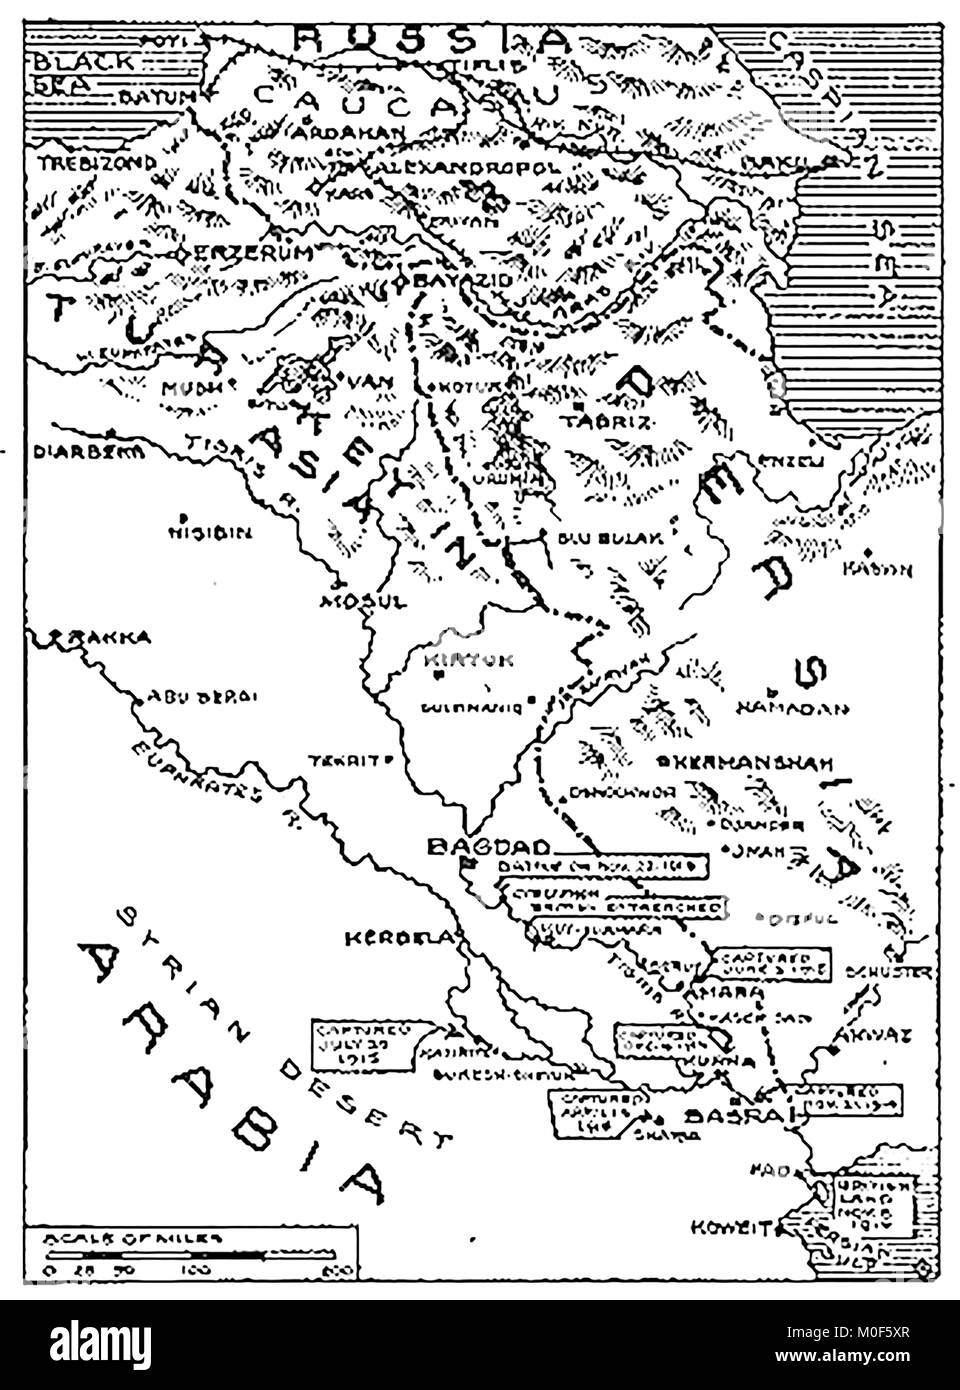 La prima guerra mondiale - Un 1917 mappa che mostra attività militare nel 1914-1918 Prima guerra mondiale - la Mesopotamia e il British operazioni dal golfo Persico 1915 Foto Stock